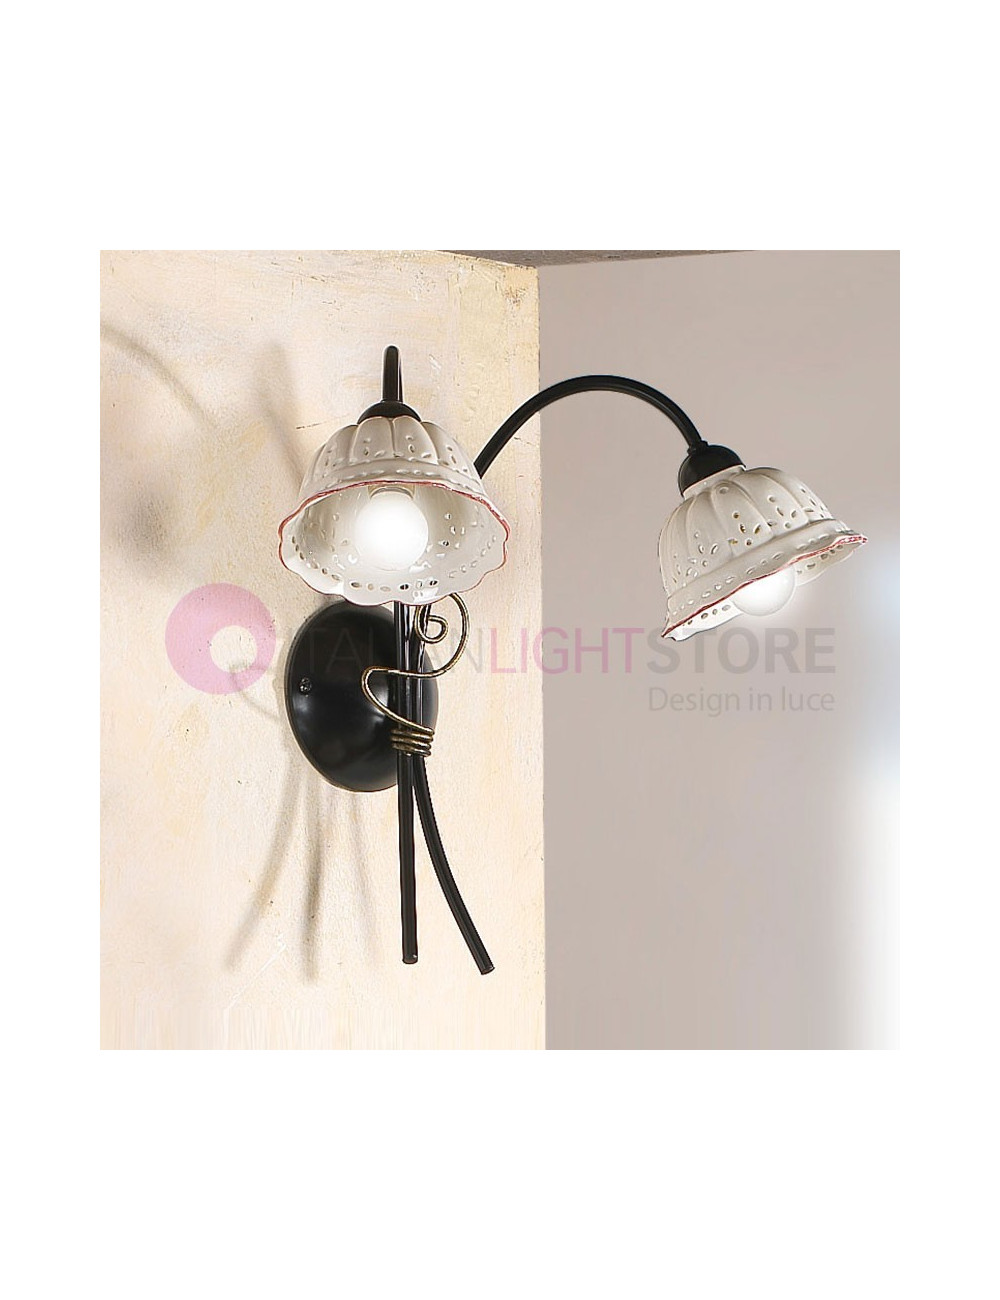 TAVERNELLE Applique Wall Lamp 2 lights in Wrought Iron and Rustic Ceramics - Ceramiche Borso